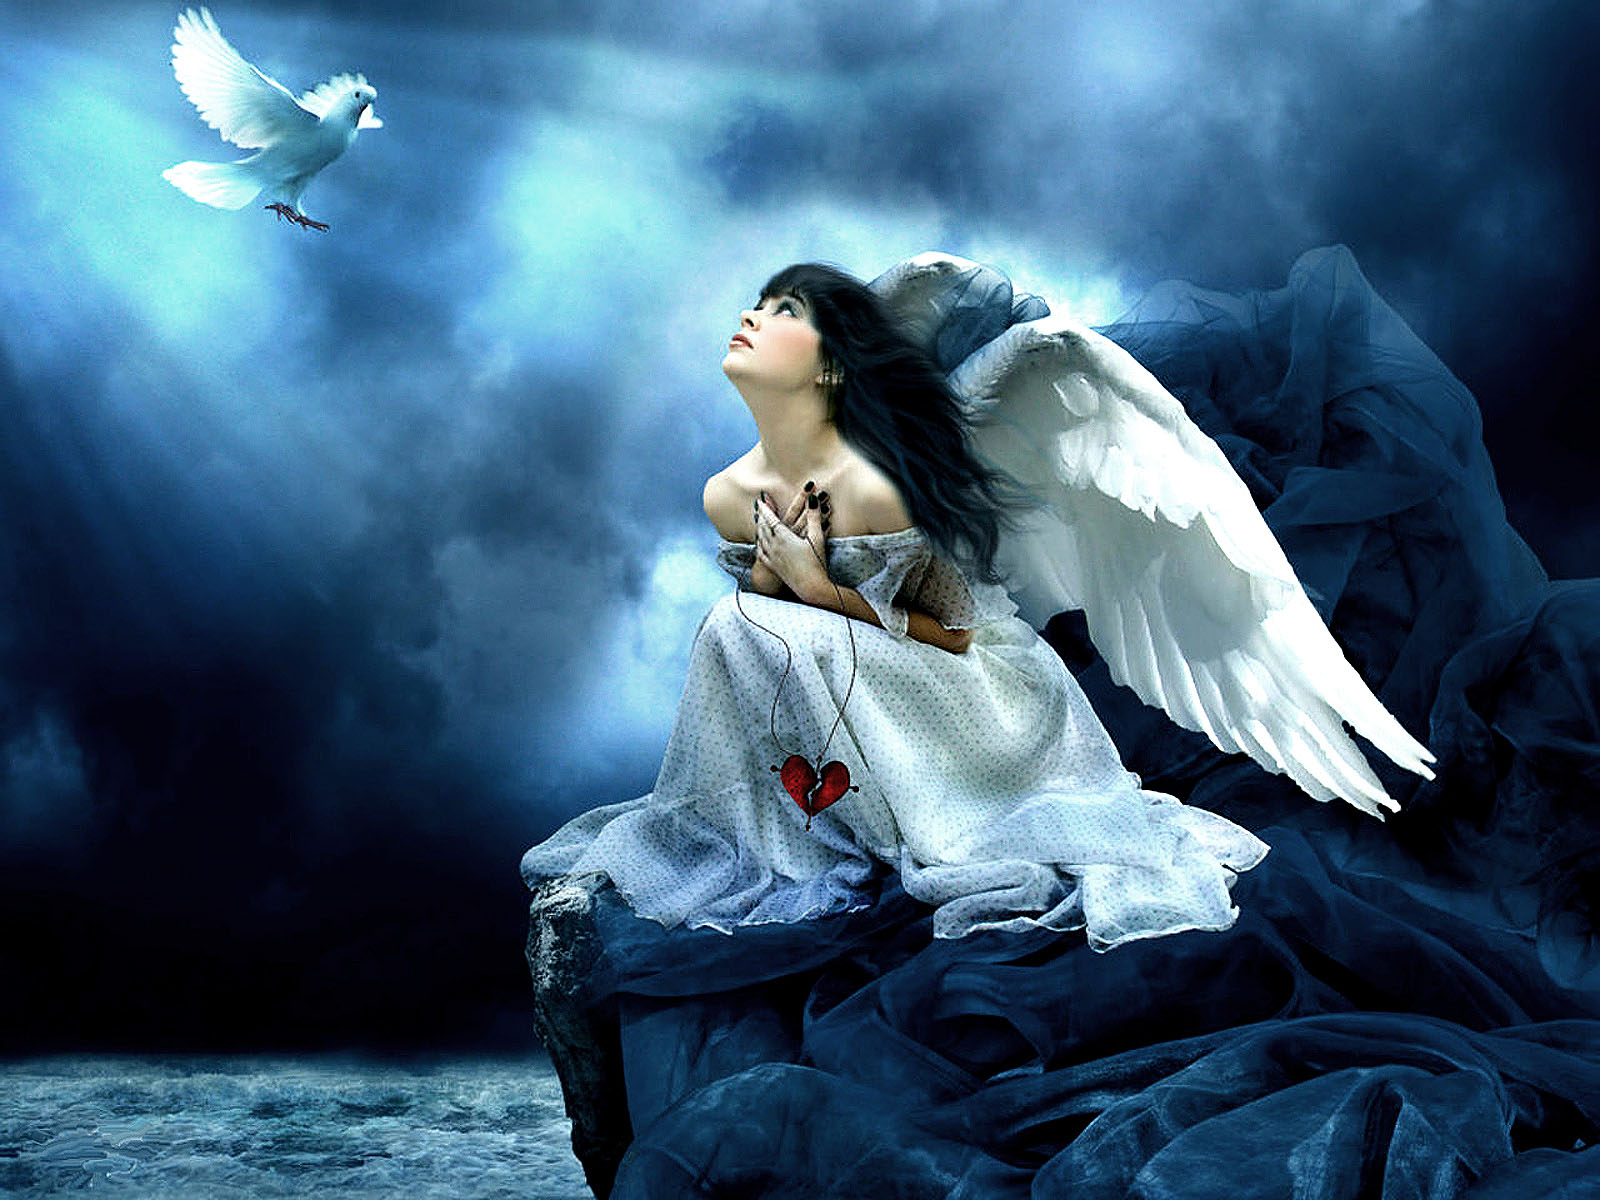 Best desktop pictures angel wallpapers hd angel wallpaper image 35jpg 1600x1200